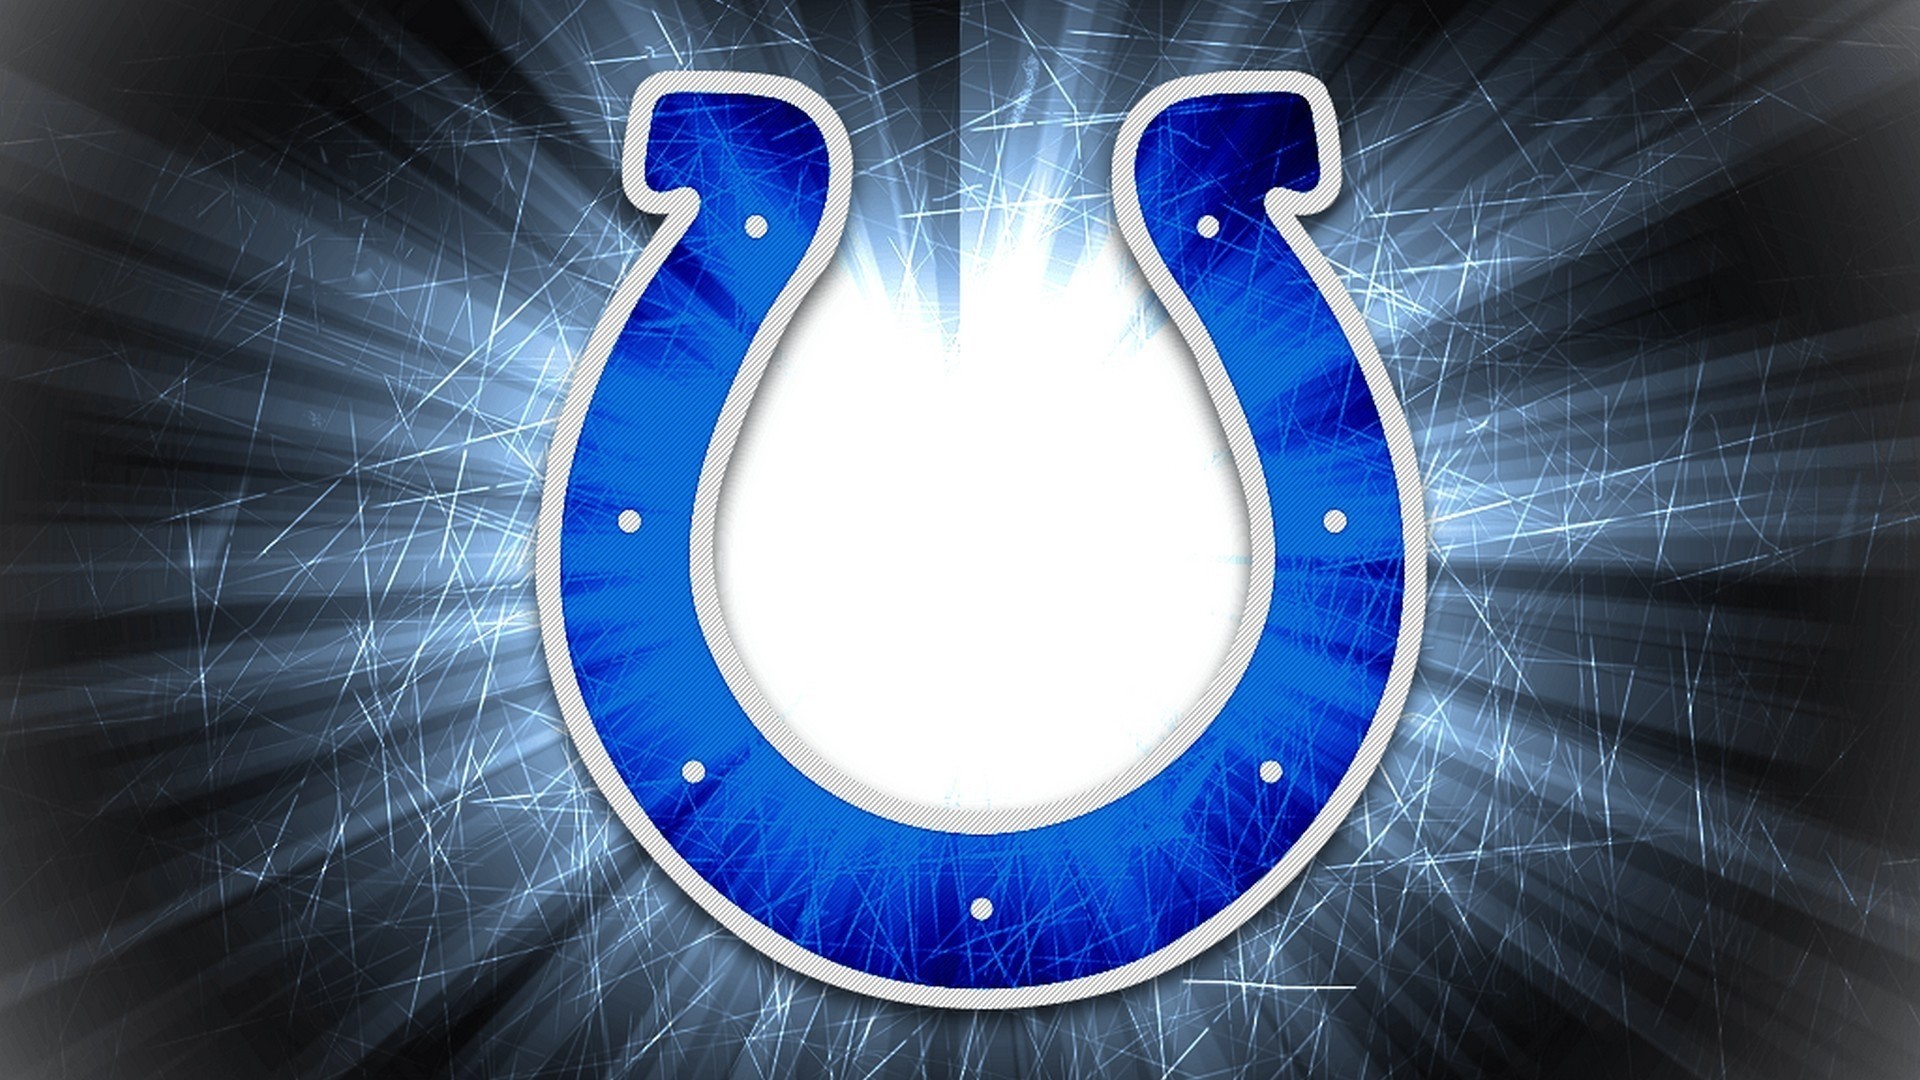 Colts hd wallpaper download